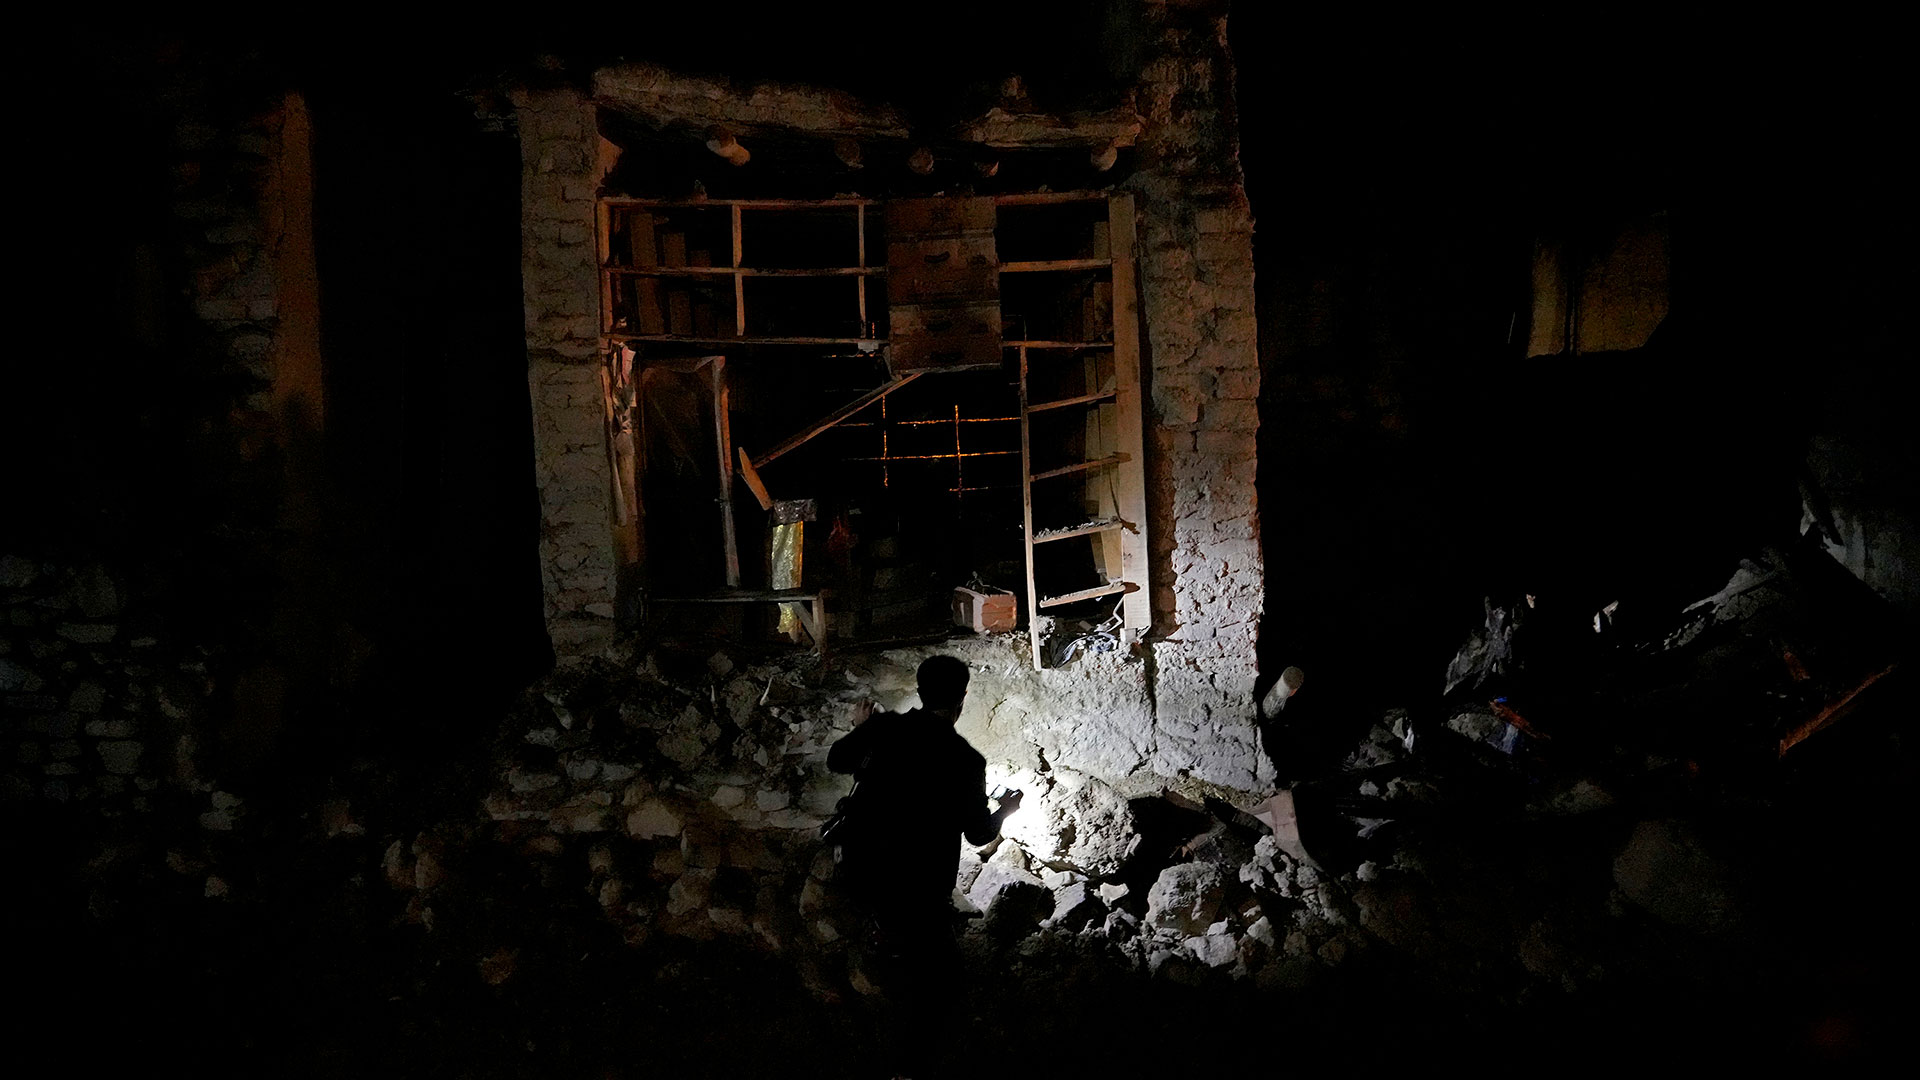 Afganos buscan sobrevivientes en la aldea de Gyan, en la provincia de Paktika, Afganistán. (Foto AP/Ebrahim Nooroozi)

